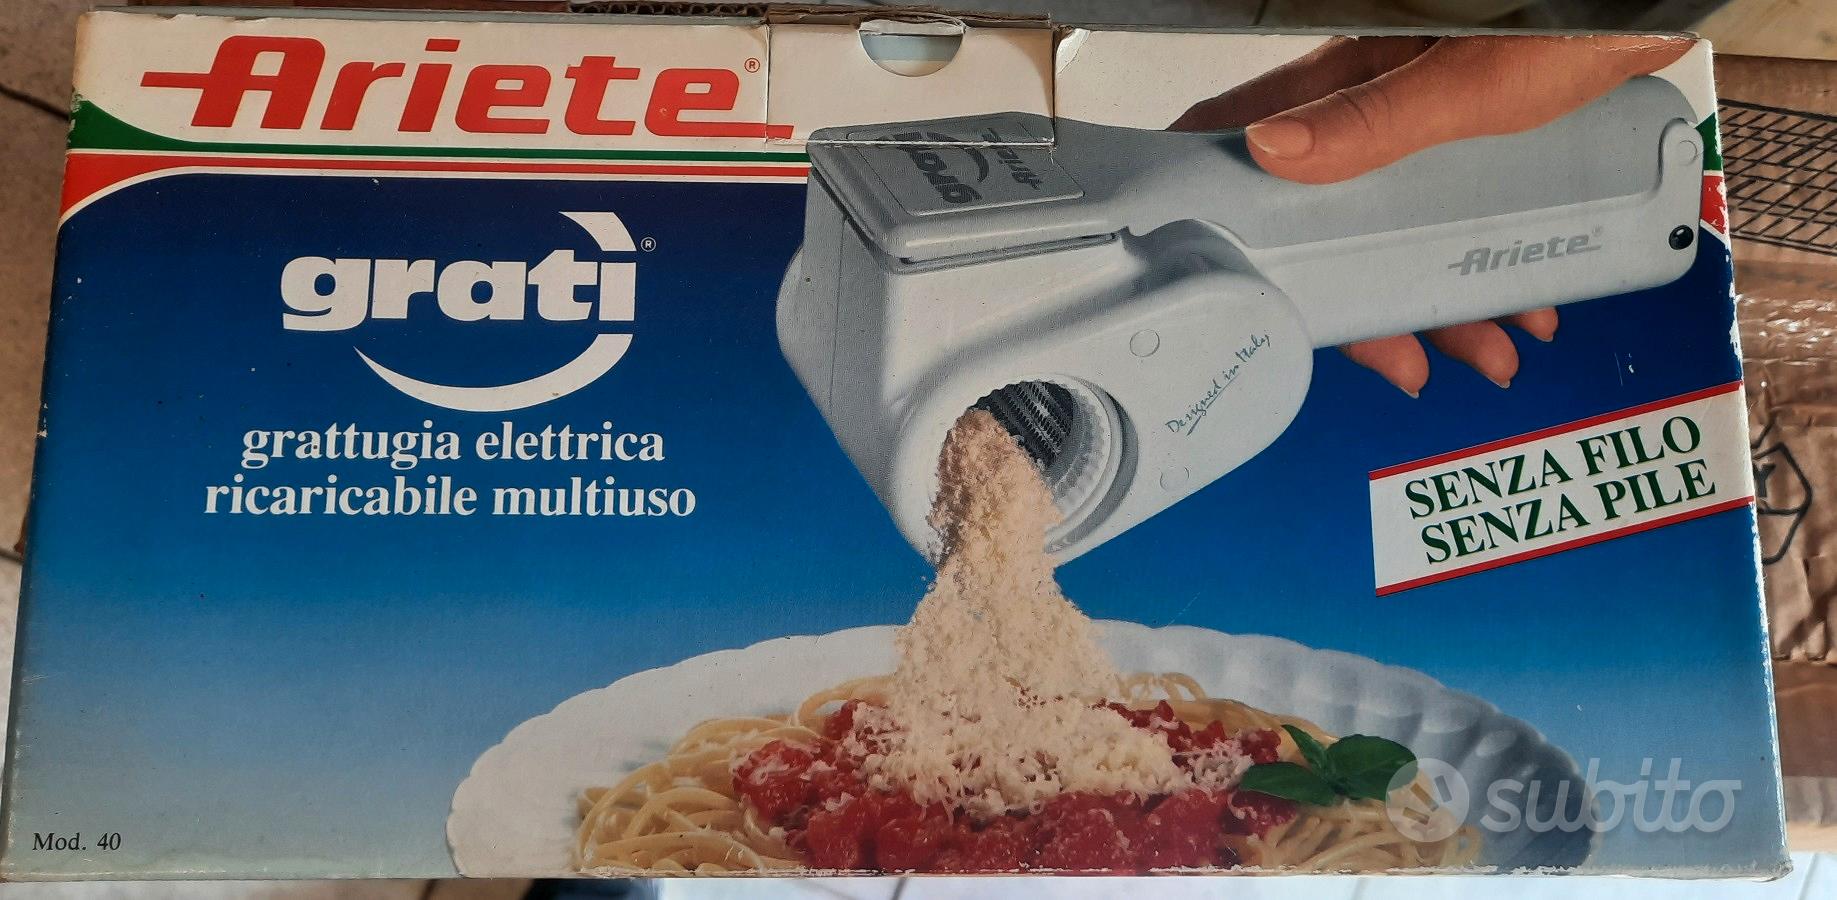 Grattugia elettrica Ariete - Elettrodomestici In vendita a Lecco